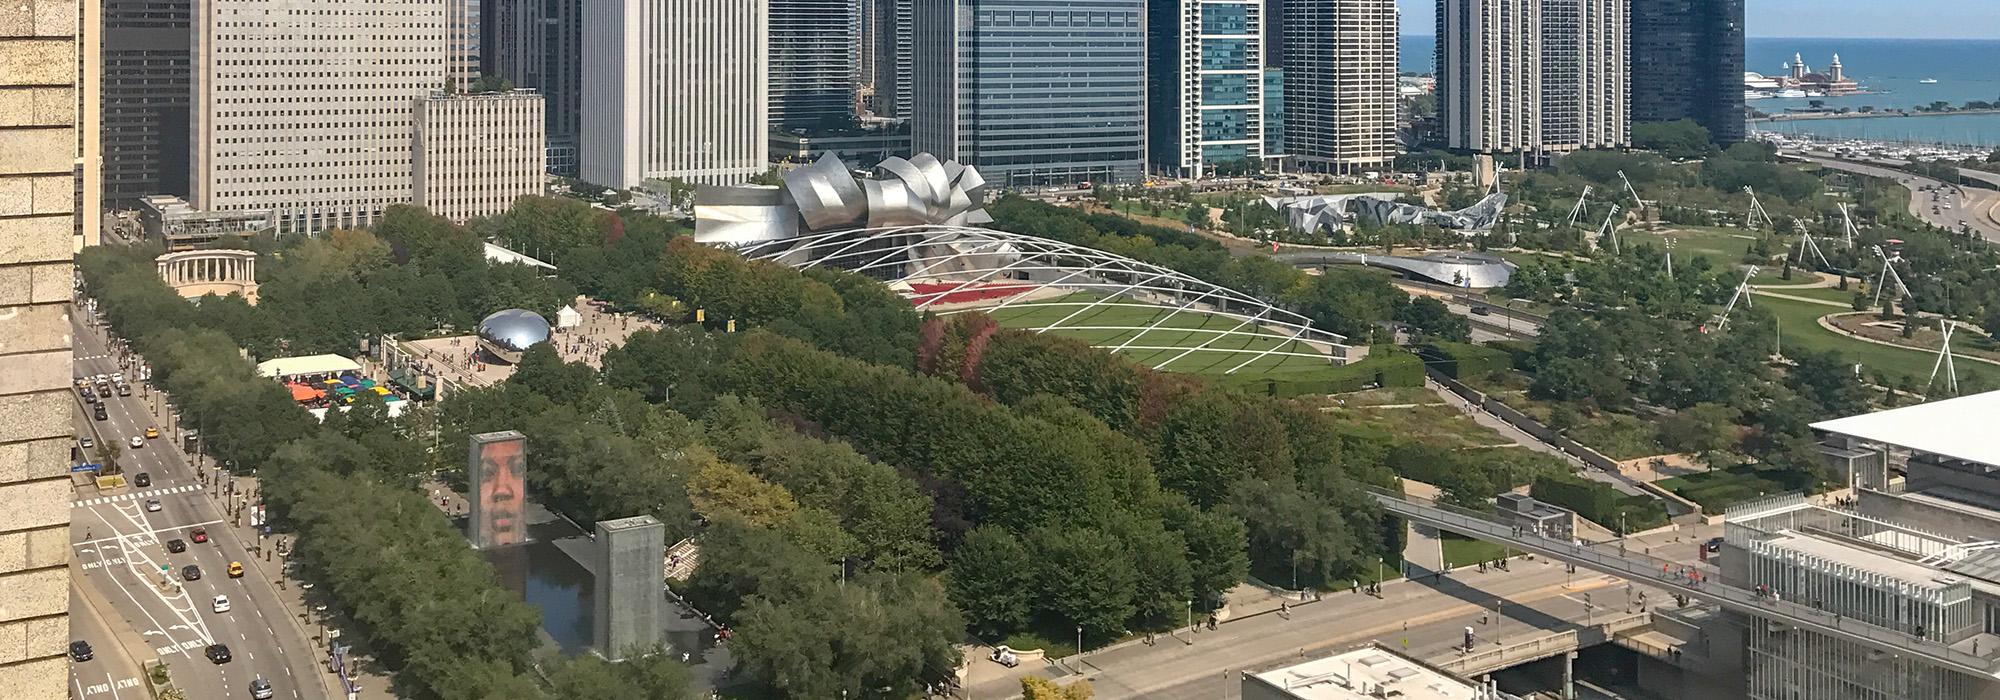 Millenium Park, Chicago, IL